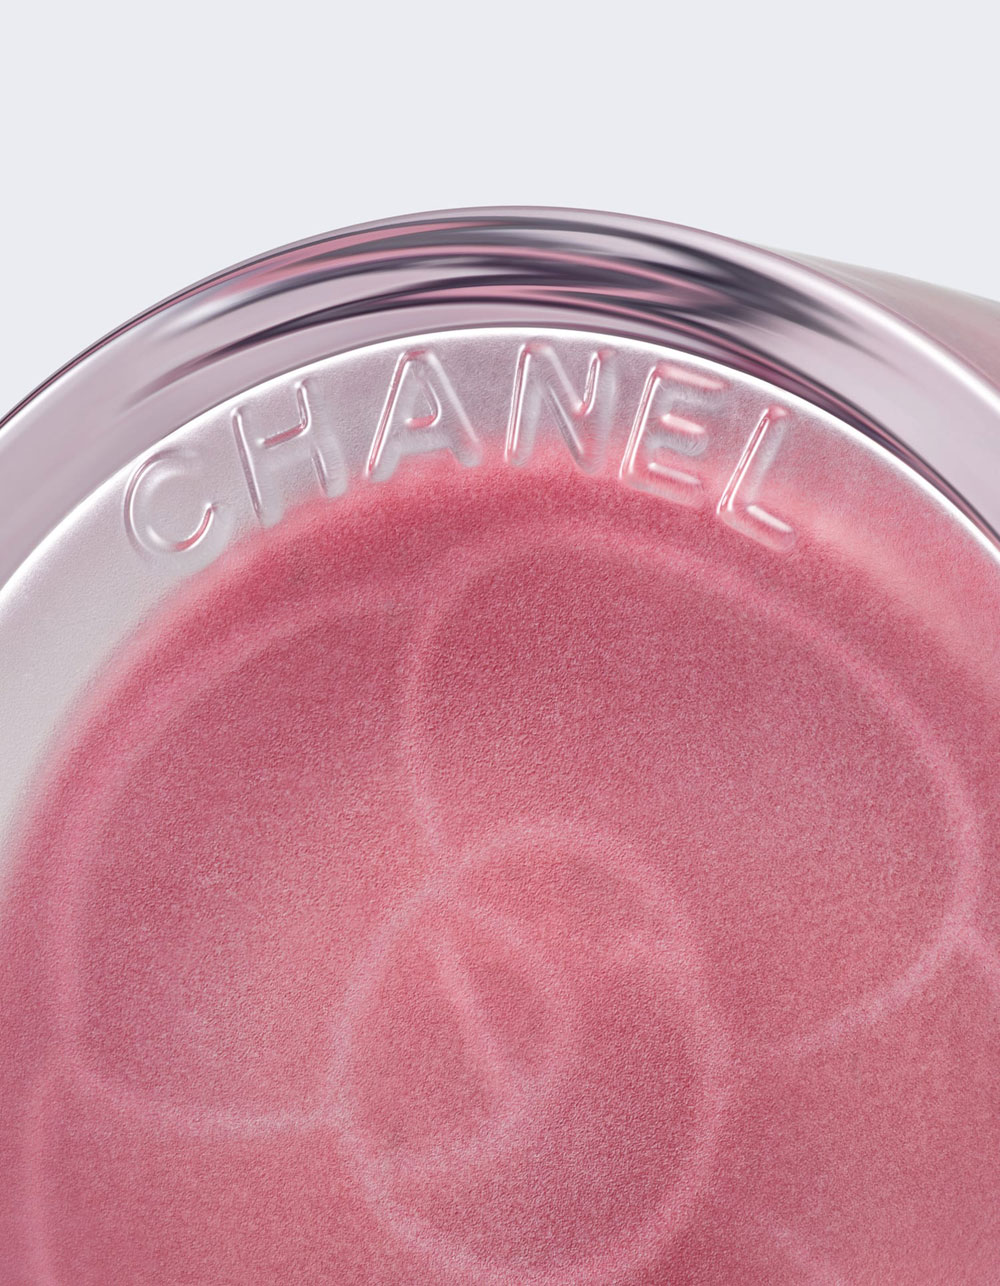 Im dritten Teil der Serie über N° 1 de Chanel gibt es alle Informationen zur Nachhaltigkeits-Strategie der neuen Clean Beauty Linie.